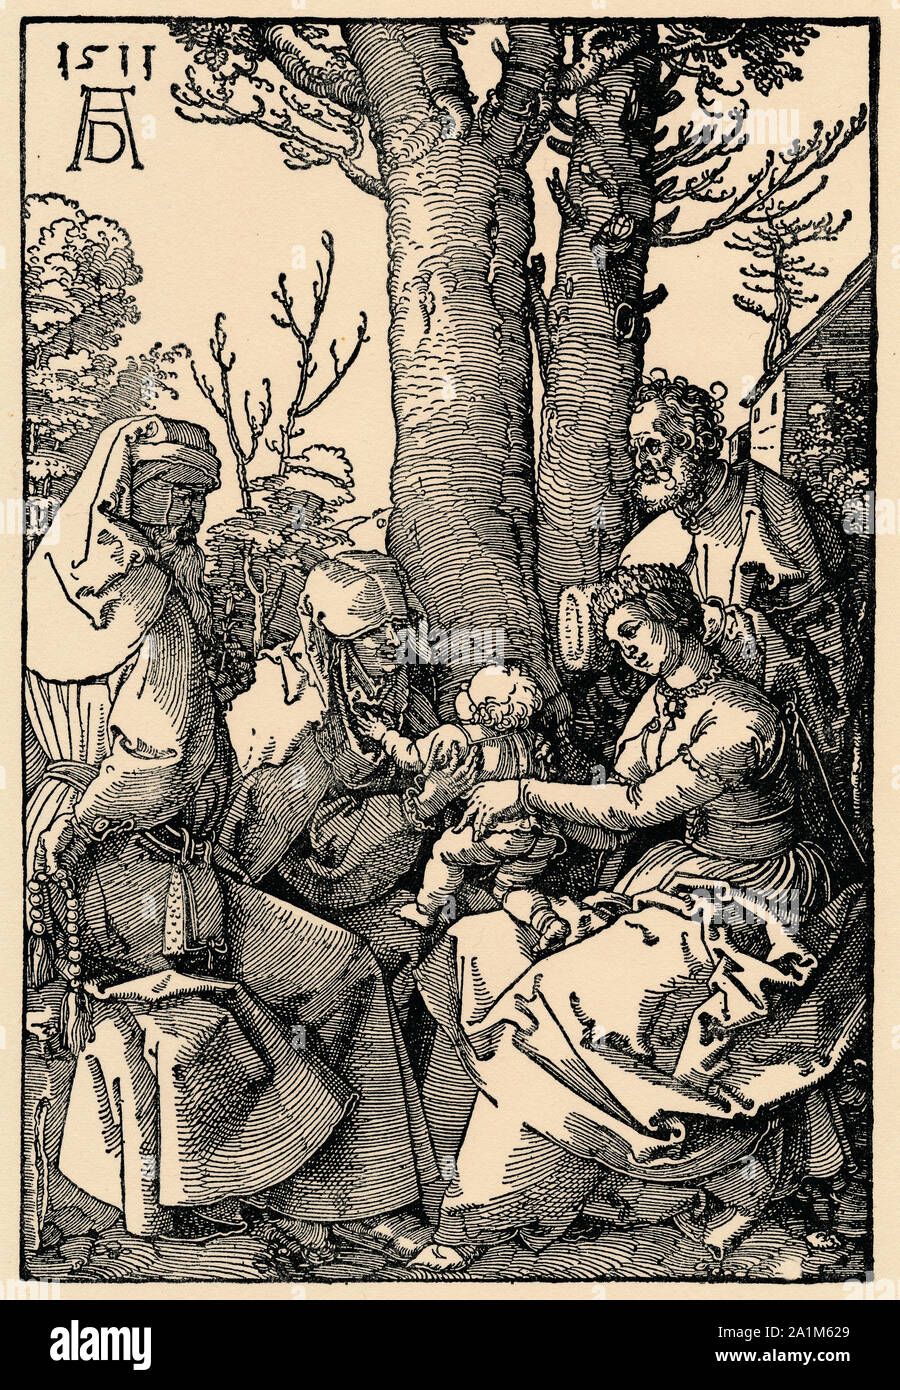 Albrecht Duerer, die heilige Familie mit Joachim und Anna unter dem Baum, the holy family with Joachim and Anna under the tree, Albrecht Dürer Stock Photo